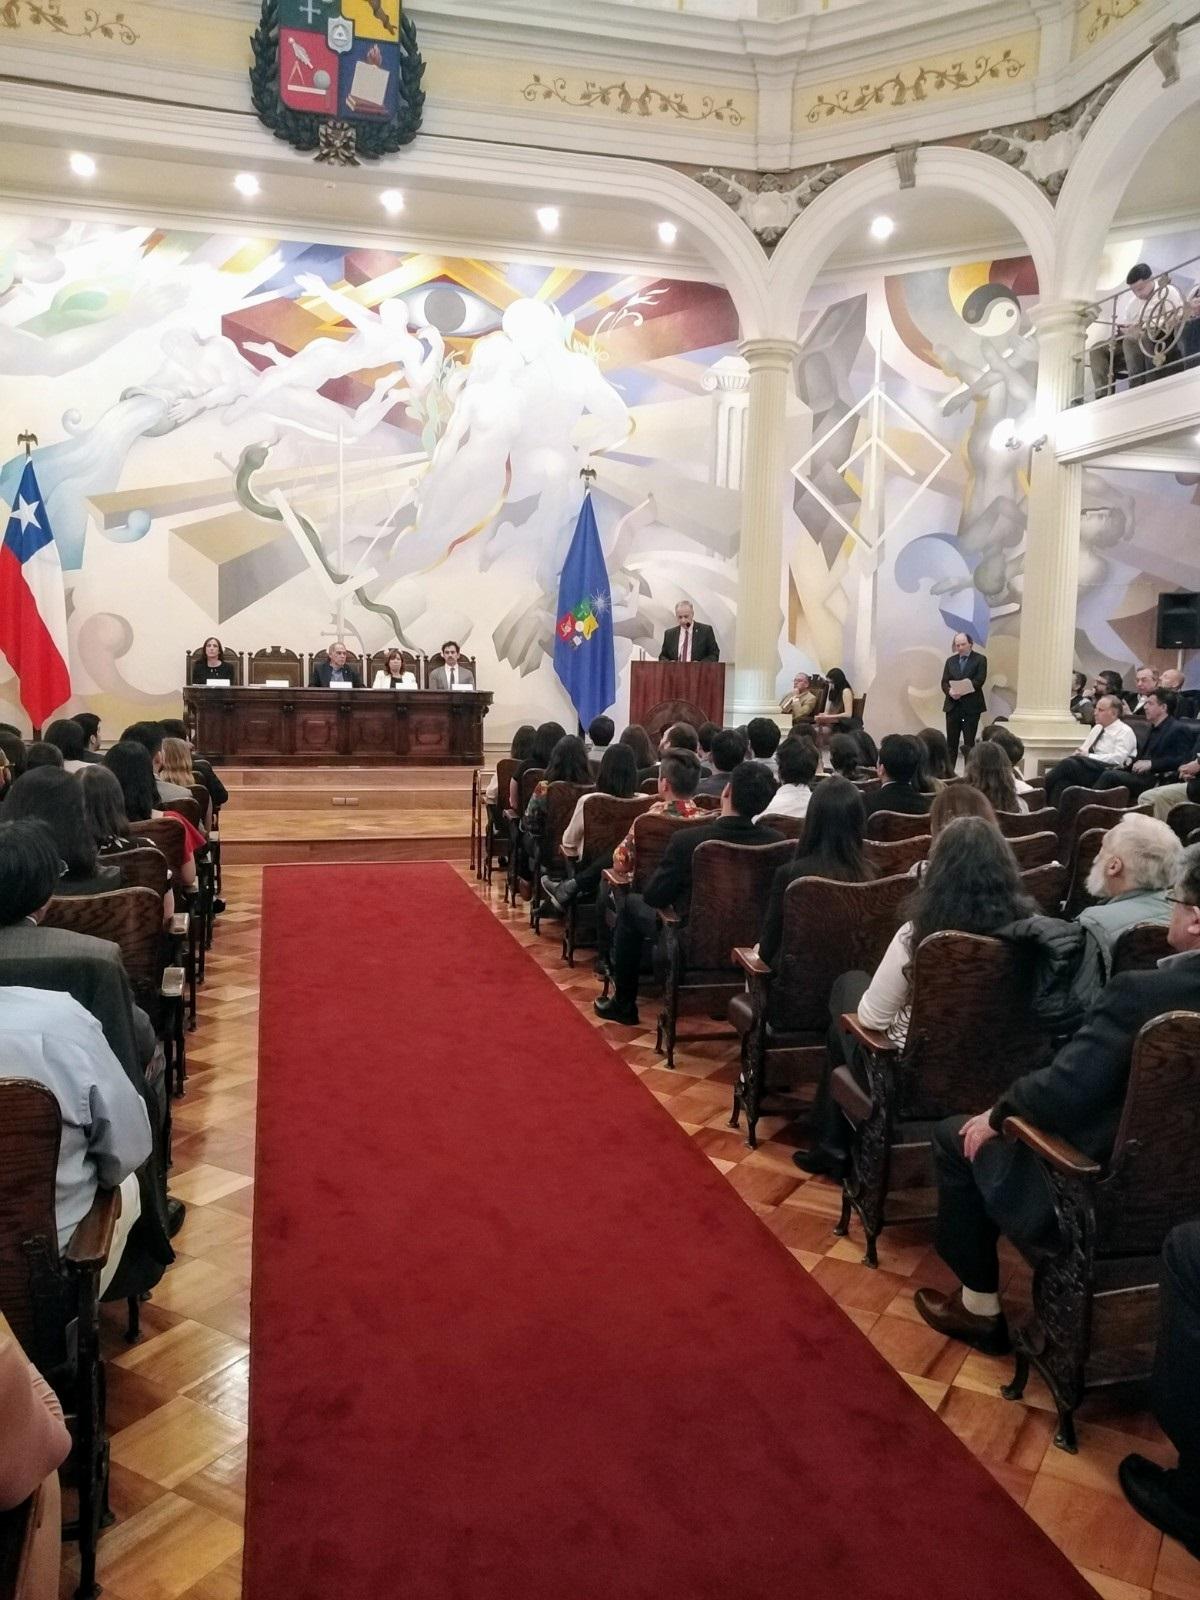 La Ceremonia fue presidida por el Vicerrector de Asuntos Estudiantiles, Prof. Juan Cortés. En la imagen, el Decano Manuel Amaya de Fau, entregando su saludo a los otrora estudiantes.